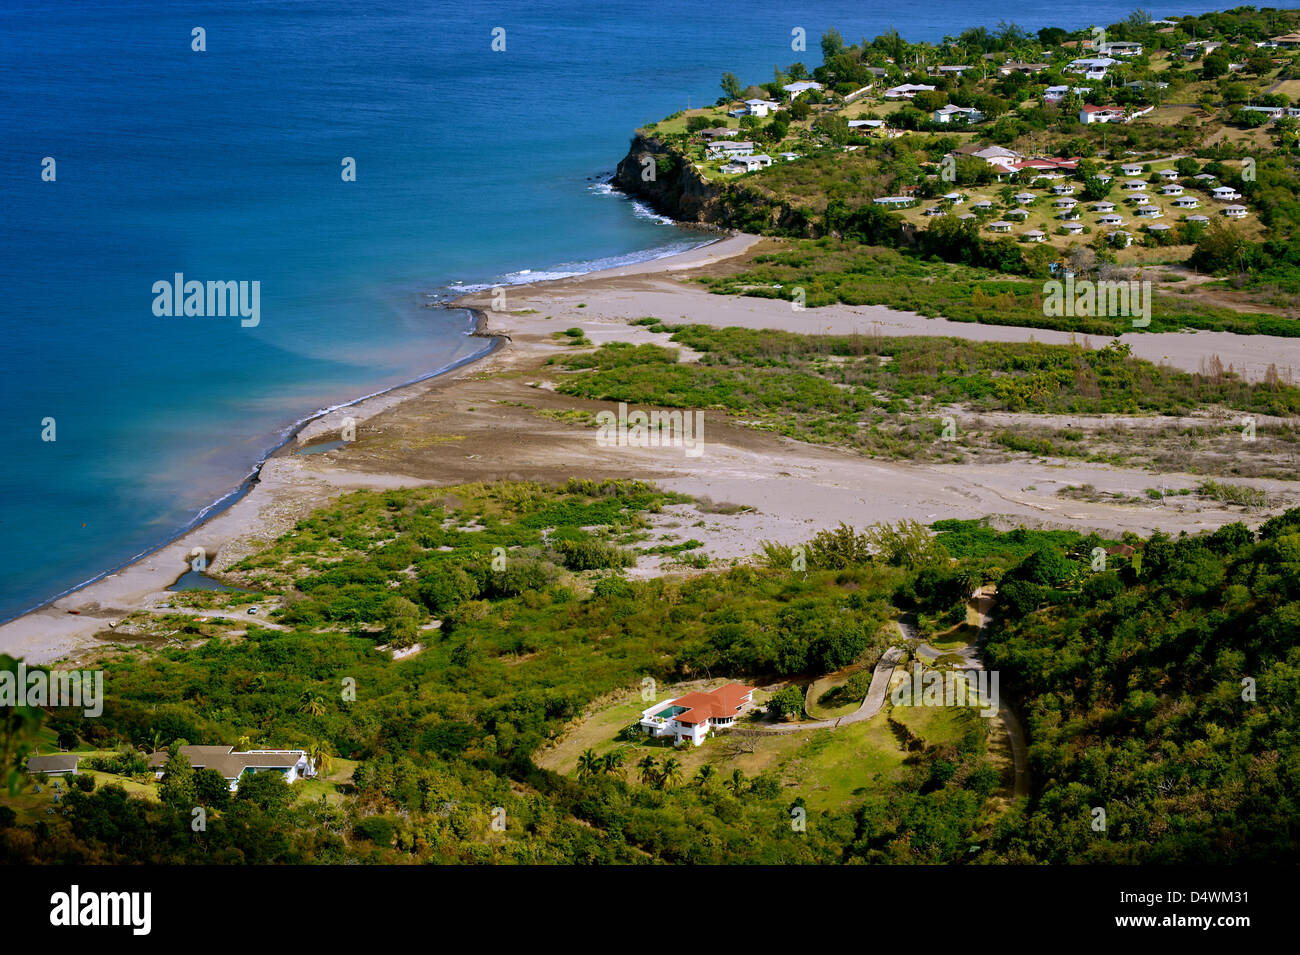 Die Verwüstung von Plymouth und den umliegenden Städten, verursacht durch den Vulkan auf der Insel Montserrat in der Karibik Stockfoto